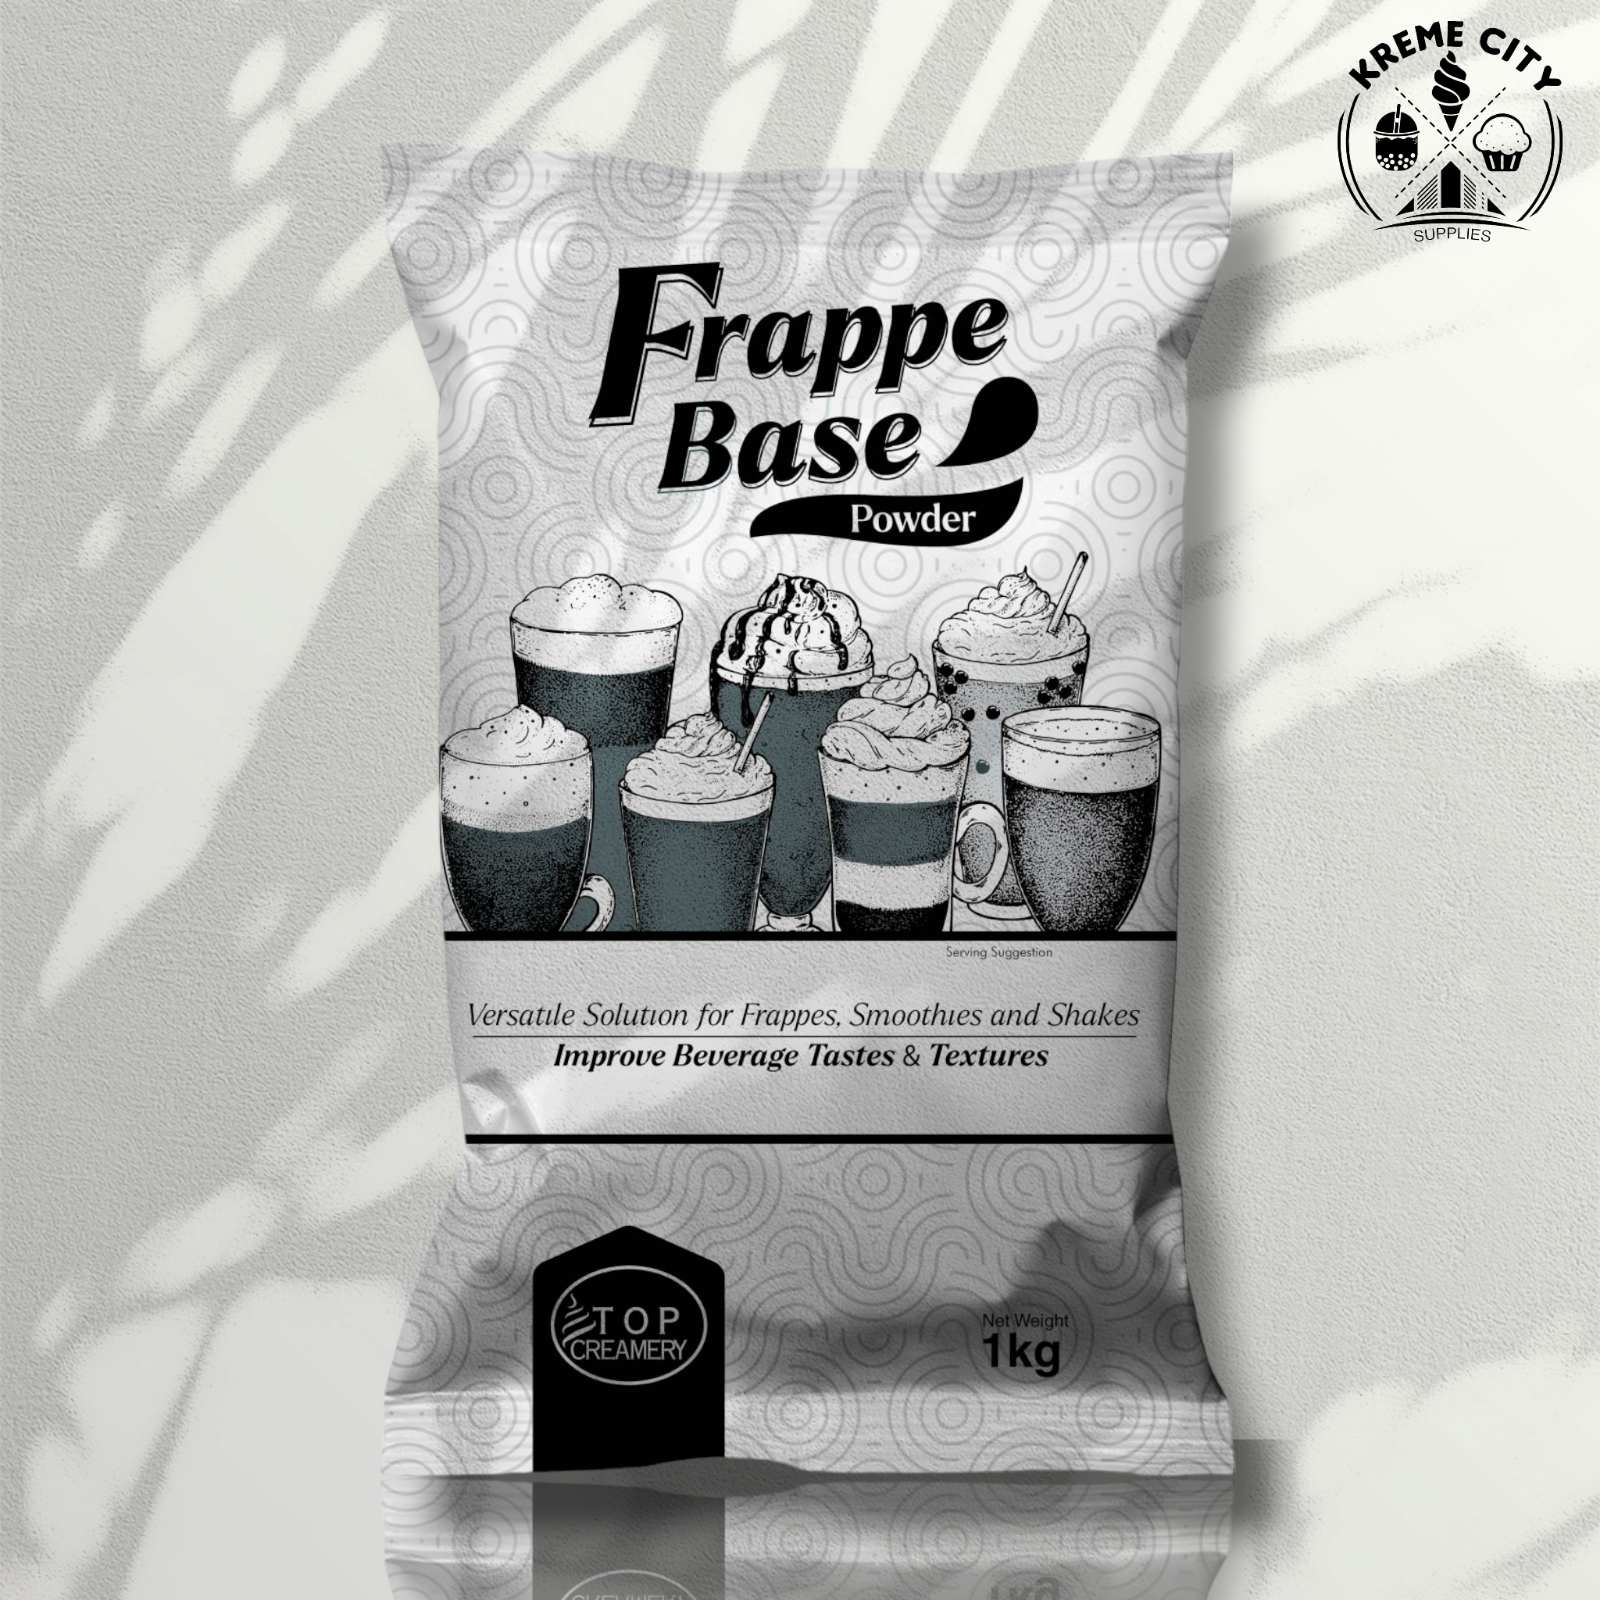 TOP Creamery Frappe Base Powder 1kg - Kreme City Supplies